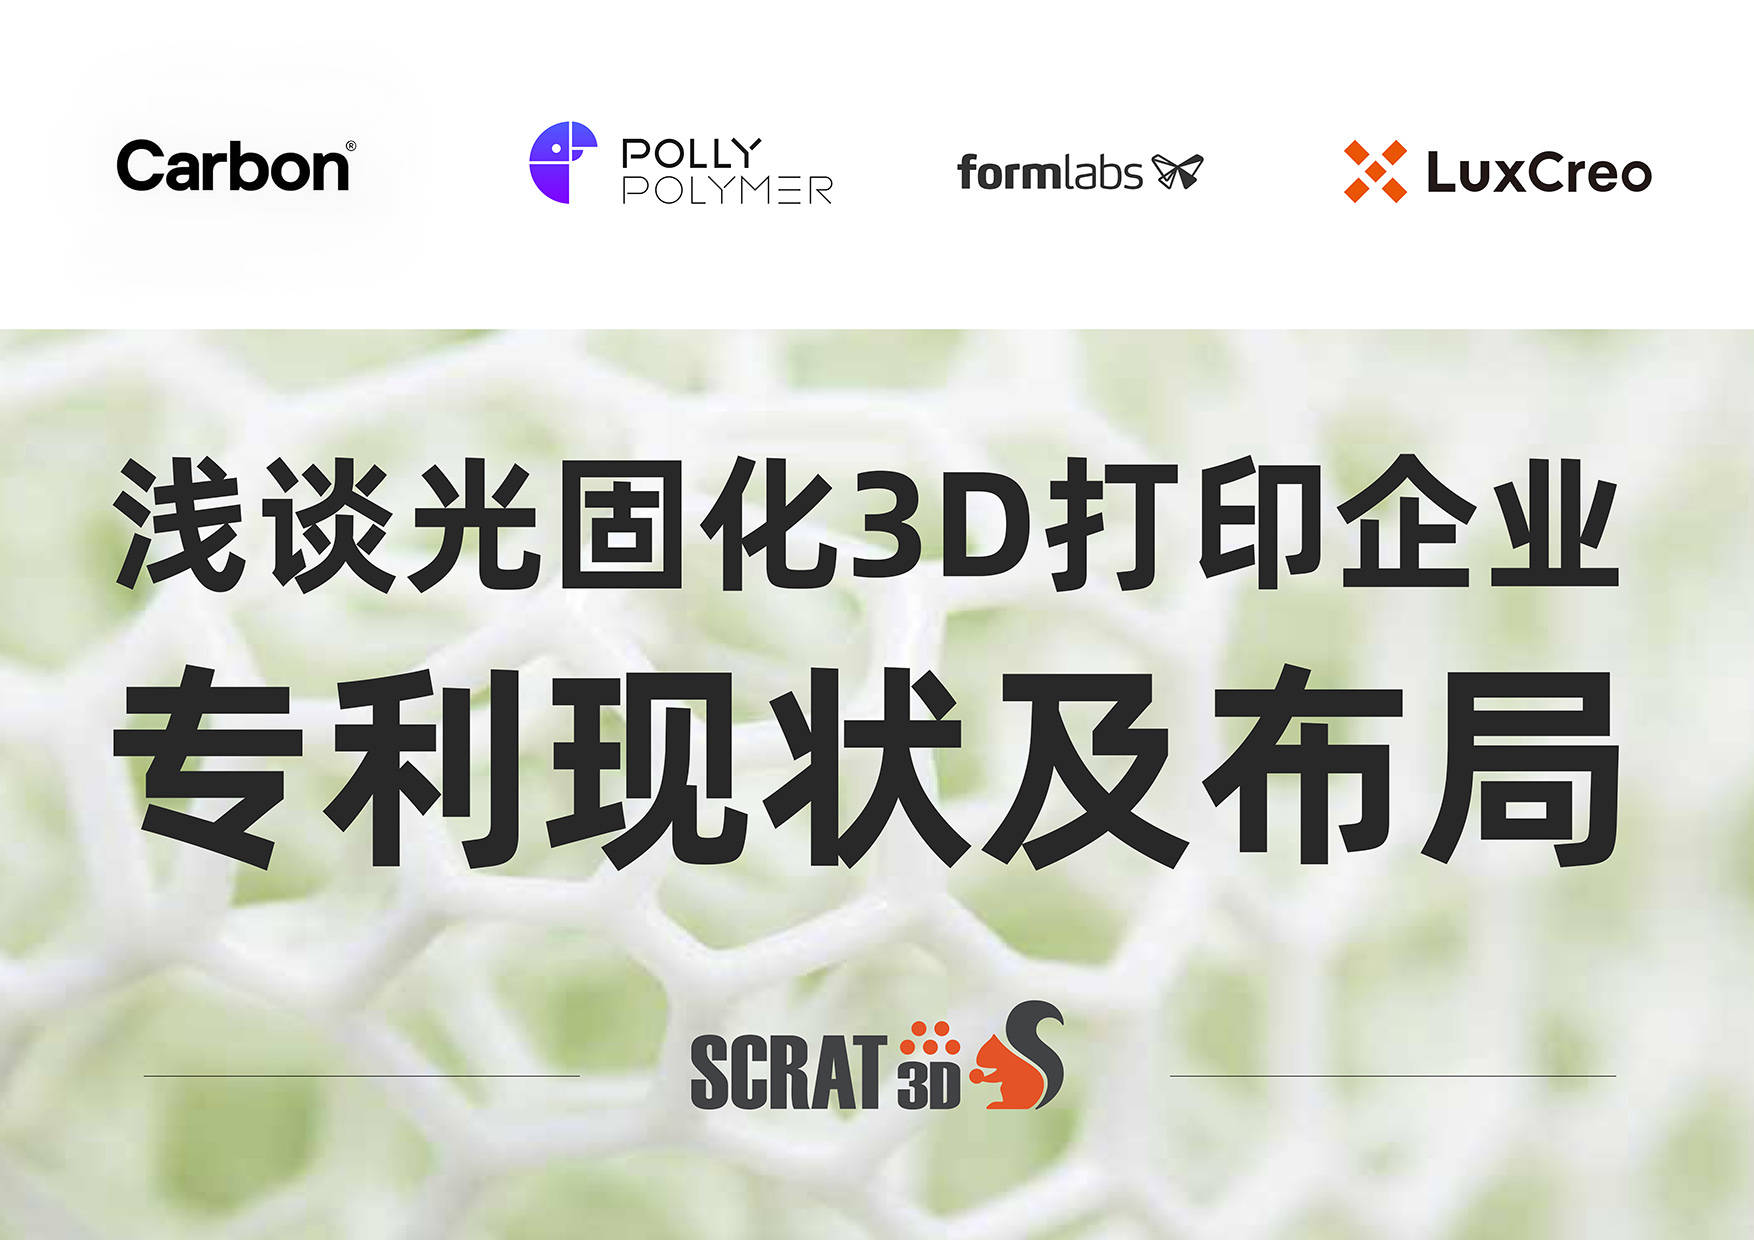 中美|SCRAT3D 浅谈中美光固化3D打印企业专利现状及布局对比